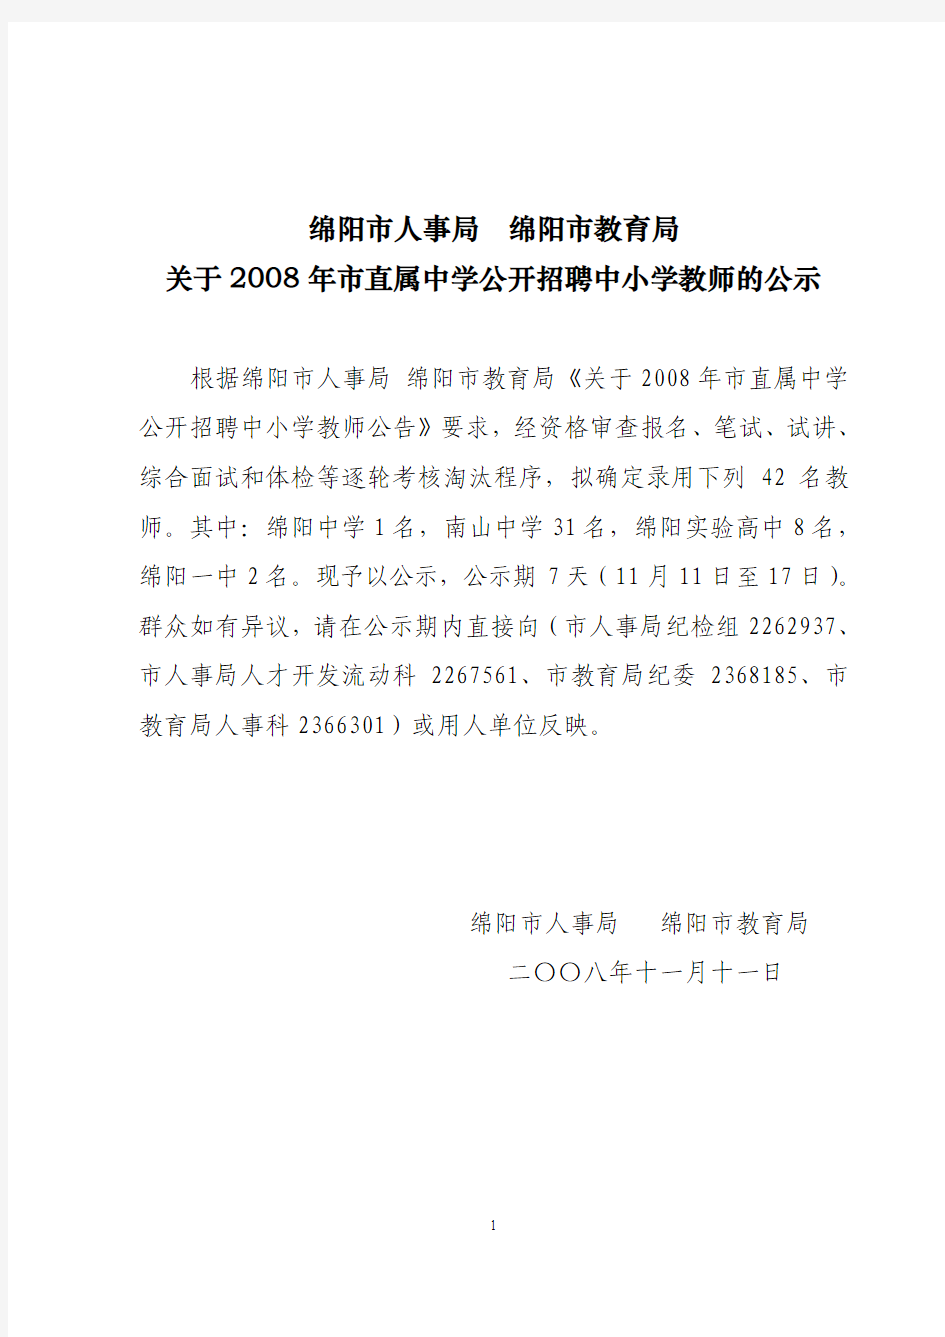 绵阳市人事局绵阳市教育局关于2008年市直属中学公开招聘中小学教师的公示